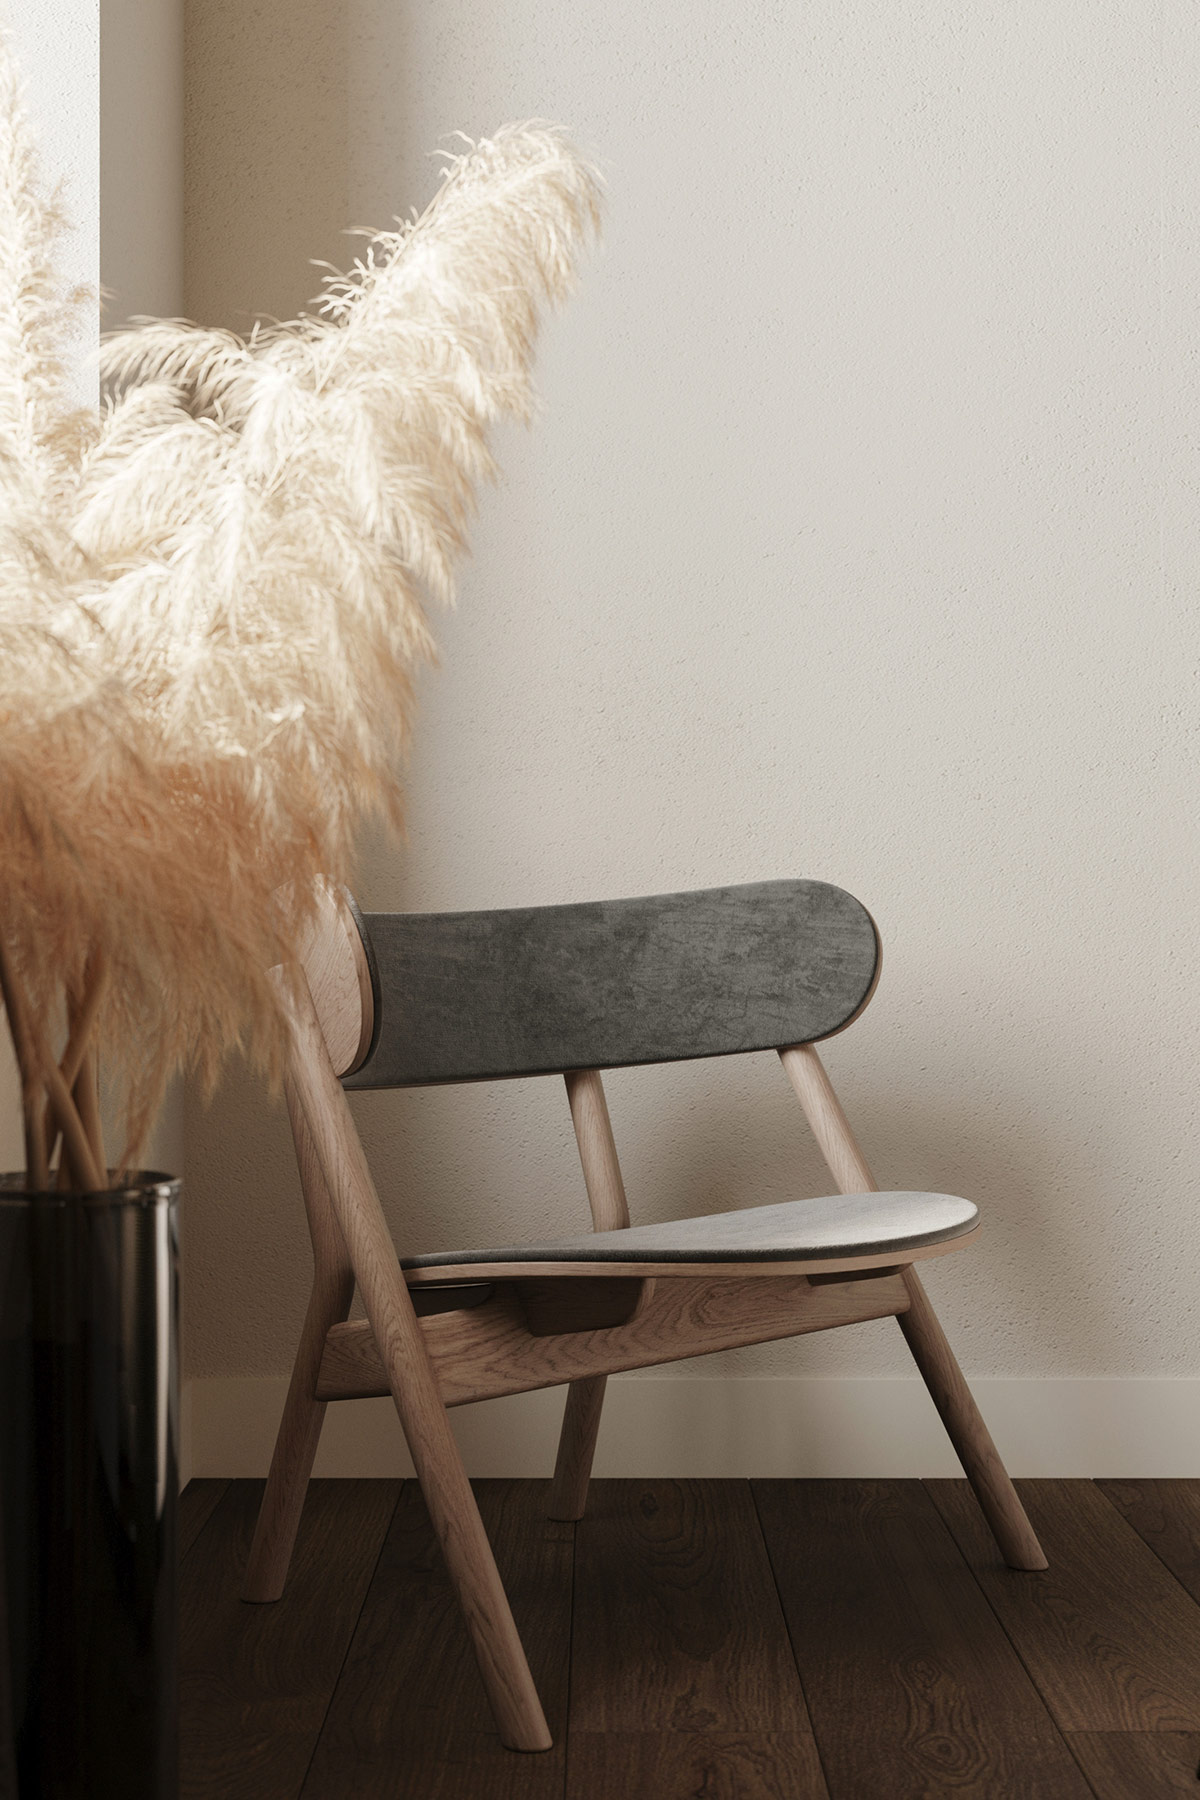 Chiếc ghế gỗ đơn giản nhưng thanh lịch đúng chất Scandinavian được bố trí ở góc nhỏ trong phòng ngủ để chủ nhân đọc sách hay thư giãn, bên cạnh là chậu cỏ nhung nhuộm màu hoài cổ.